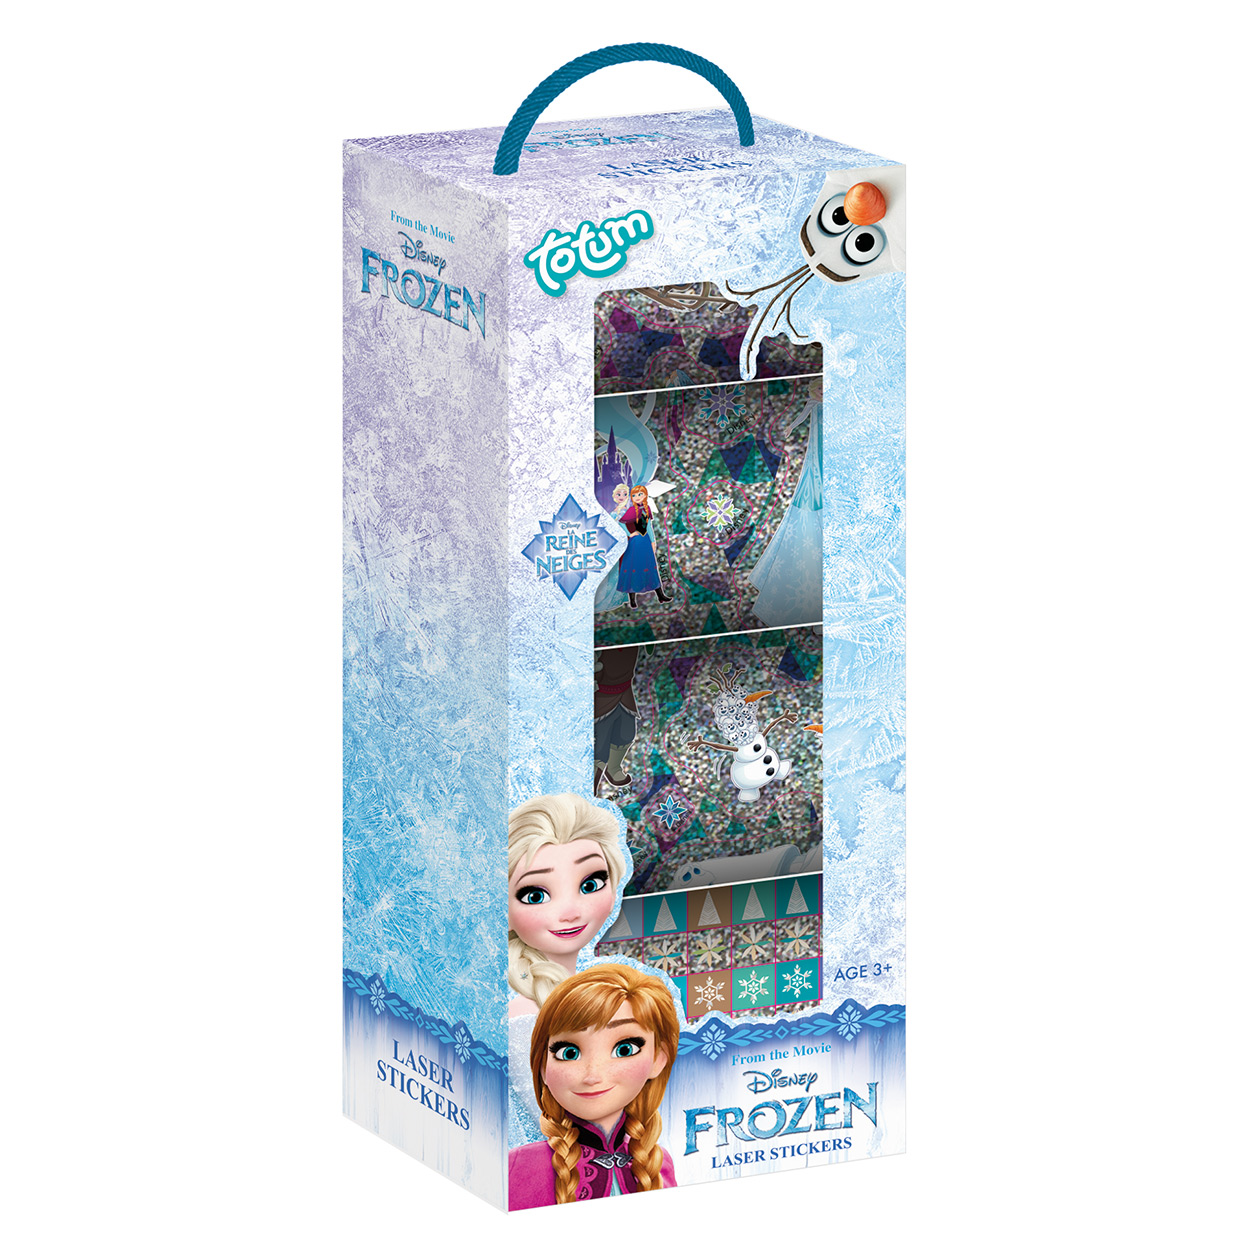 Disney Frozen Movie Stickers 100 Per Pack 